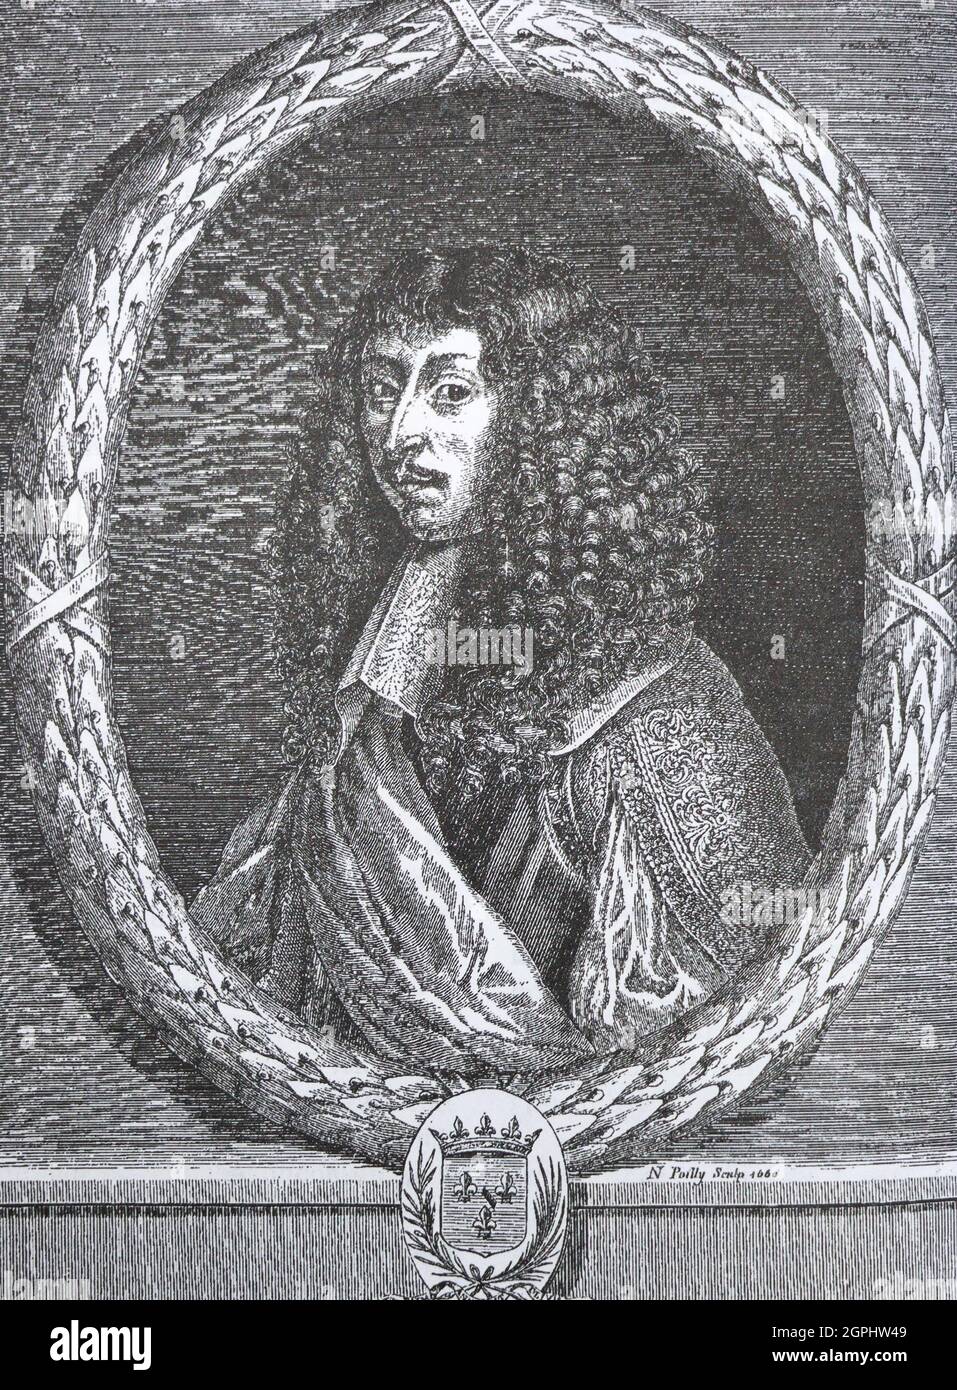 Luis de Borbón, o Luis III, Príncipe de Condé (1668-1710), fue un príncipe  du cantó como miembro de la Casa de Borbón reinante en la corte francesa de  Luis XIV Con el